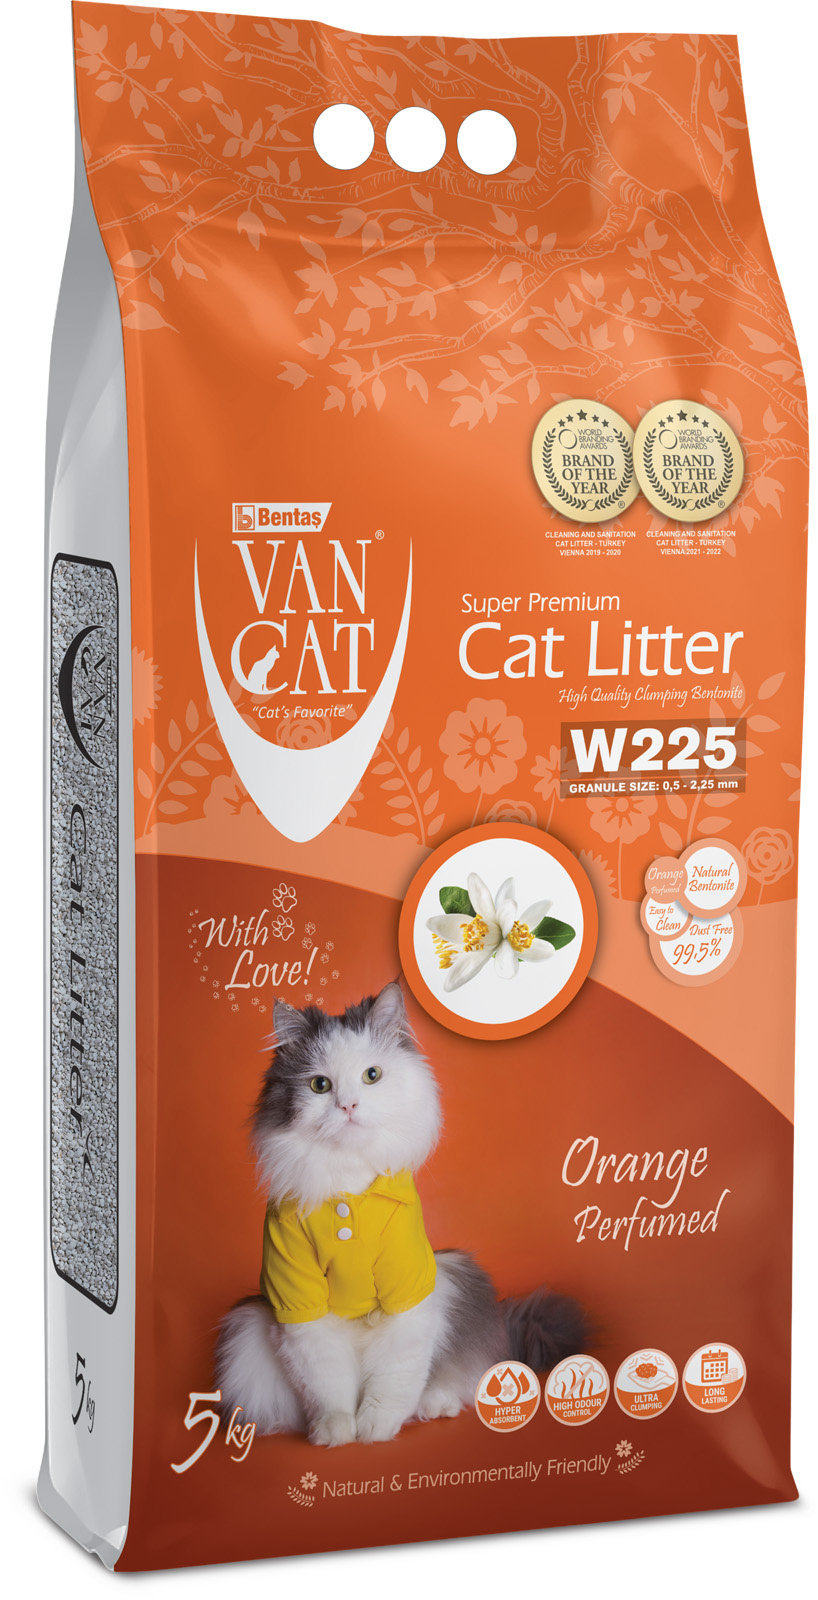 Van Cat Van Cat комкующийся наполнитель без пыли с ароматом апельсина, пакет (5 кг) van cat van cat комкующийся наполнитель 100% натуральный без пыли пакет 5 кг